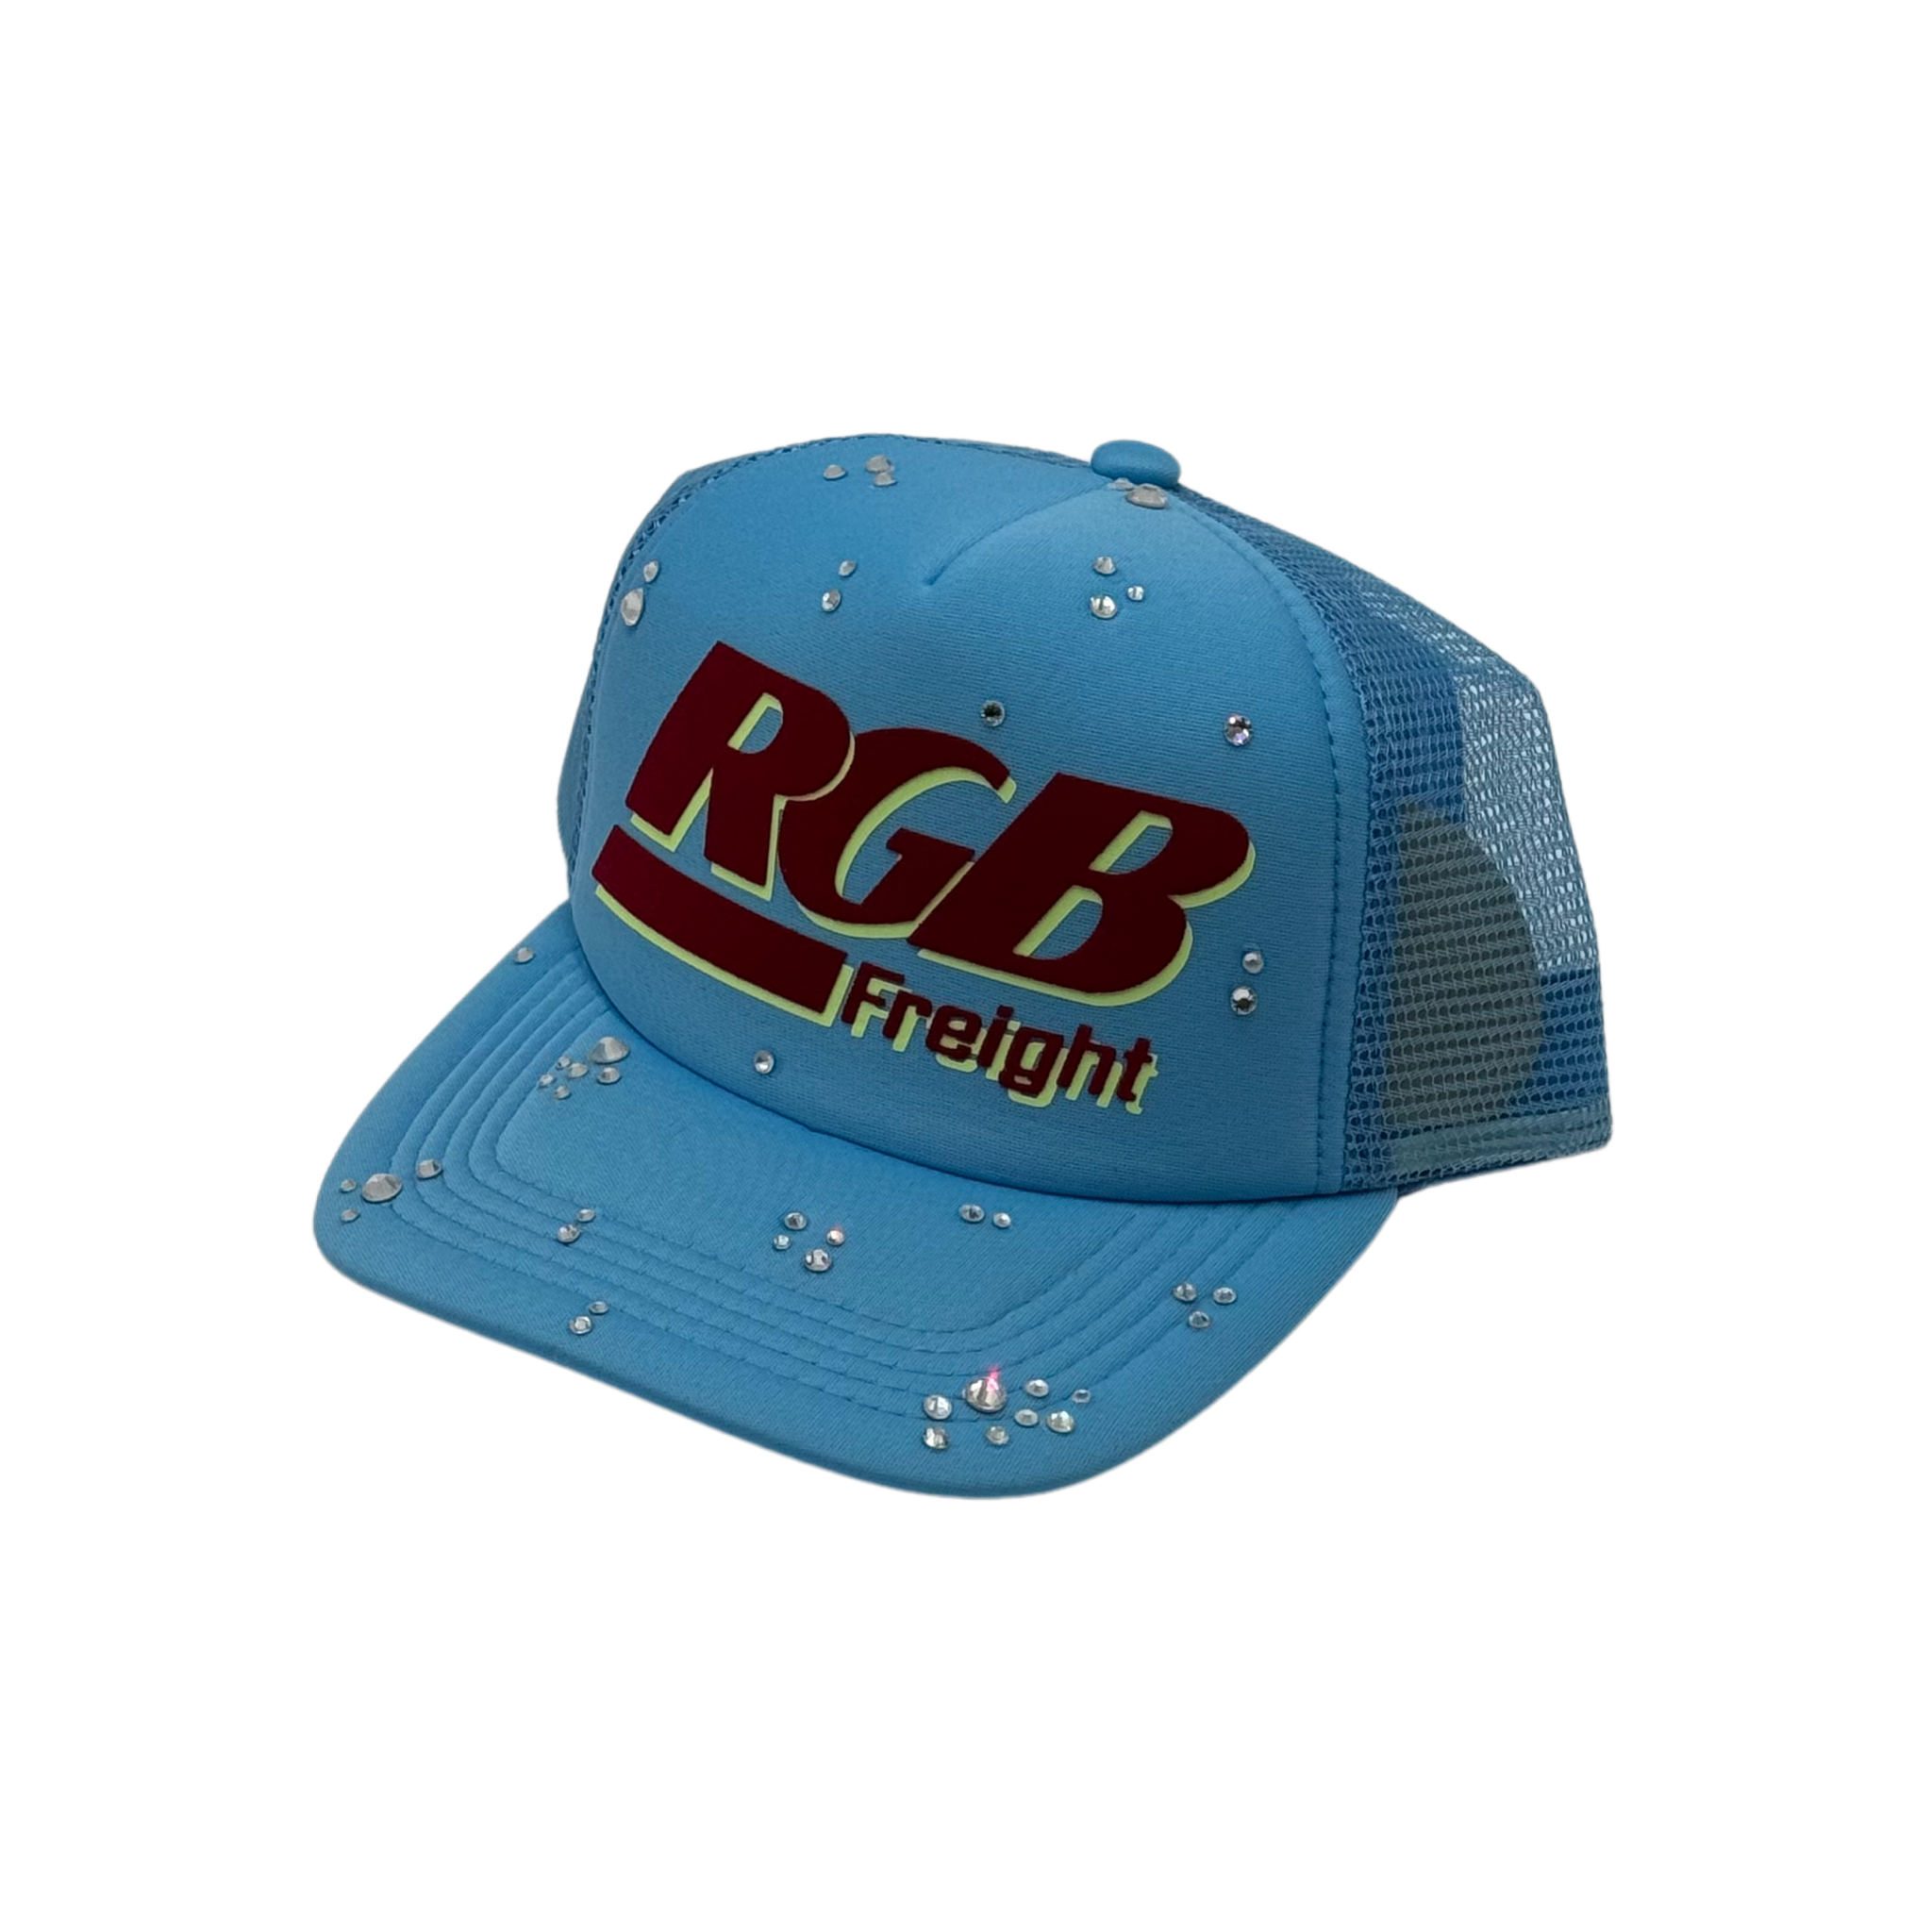 RGB FREIGHT TRUCKER HAT - “RAIN DROPS” SP